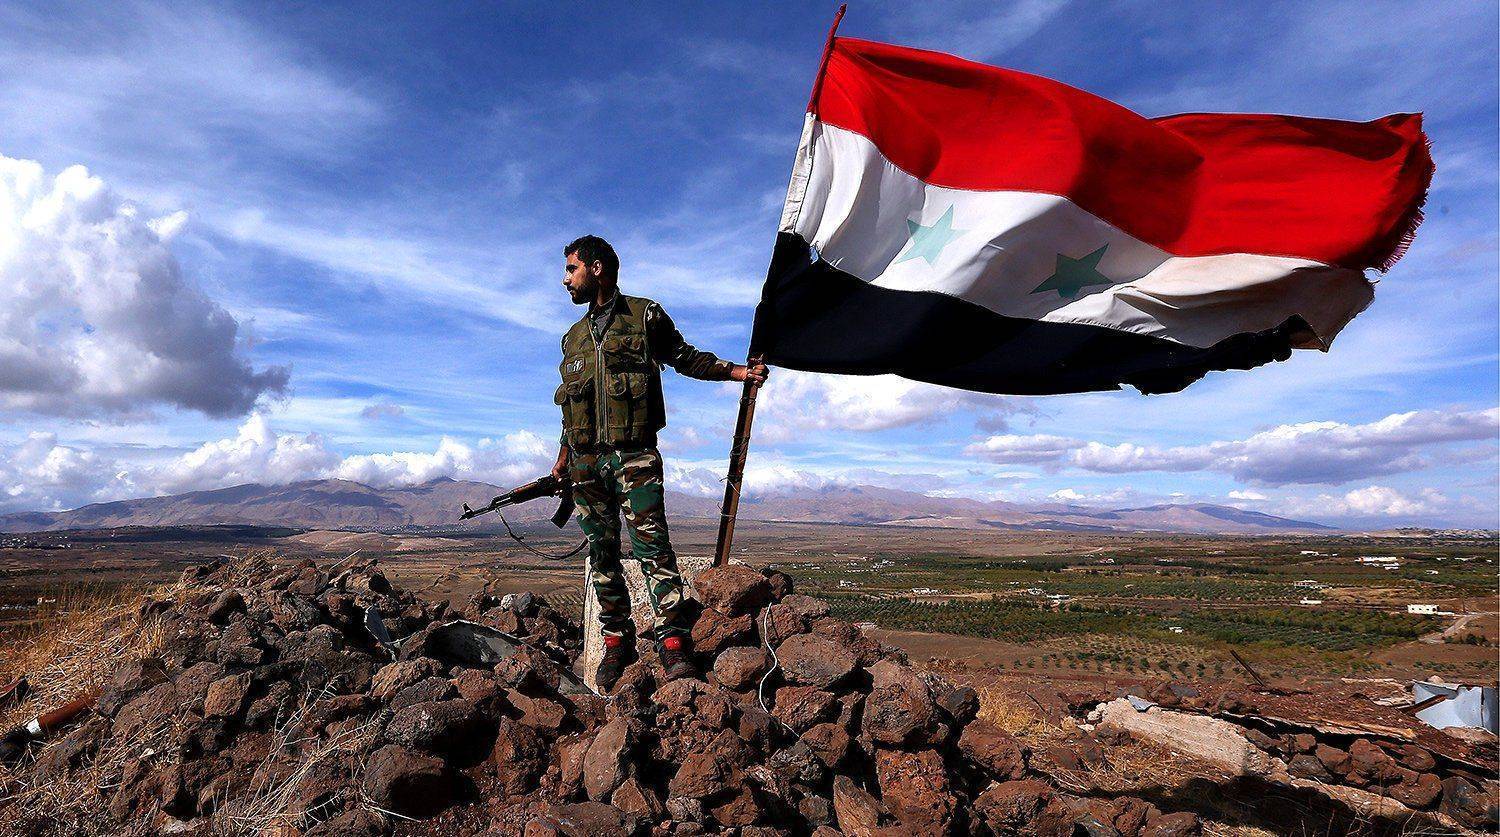 Гражданская война в Сирии имеет хорошие шансы закончится, если Запад перестанет мешать